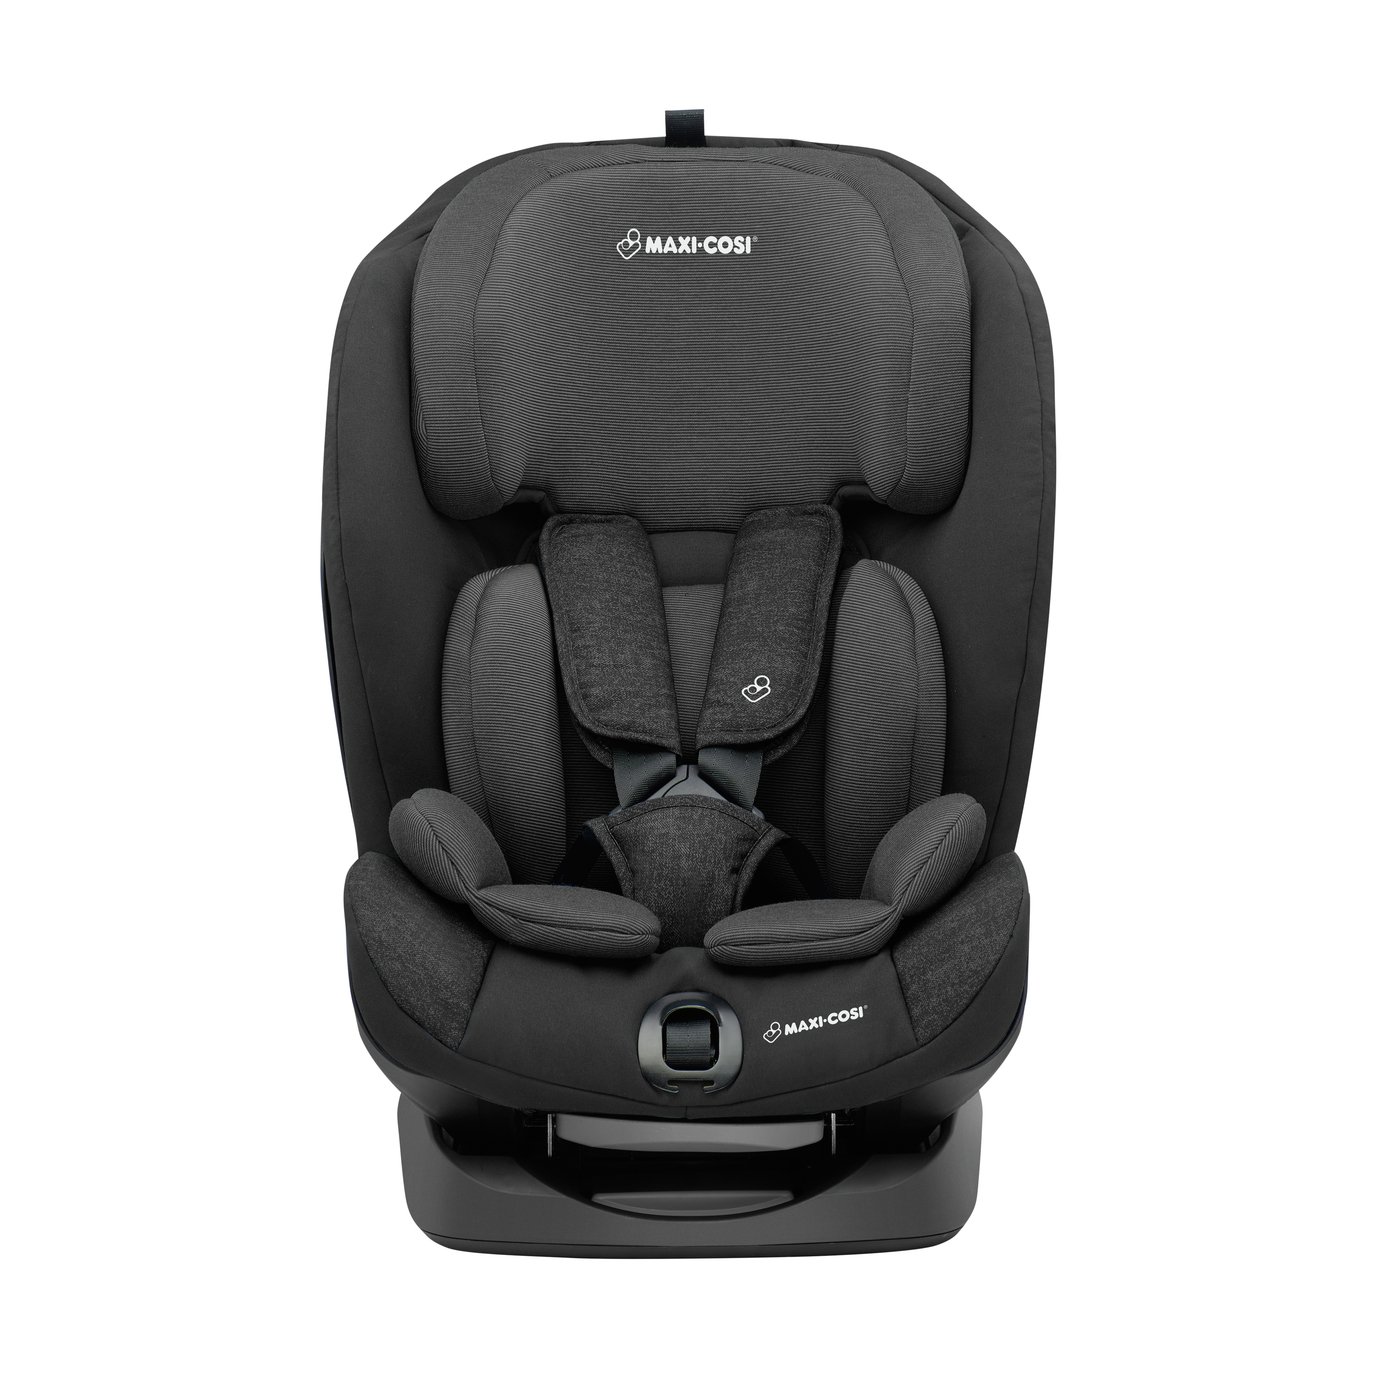 Maxi-Cosi Titan Group 1/2/3 Car Seat Review